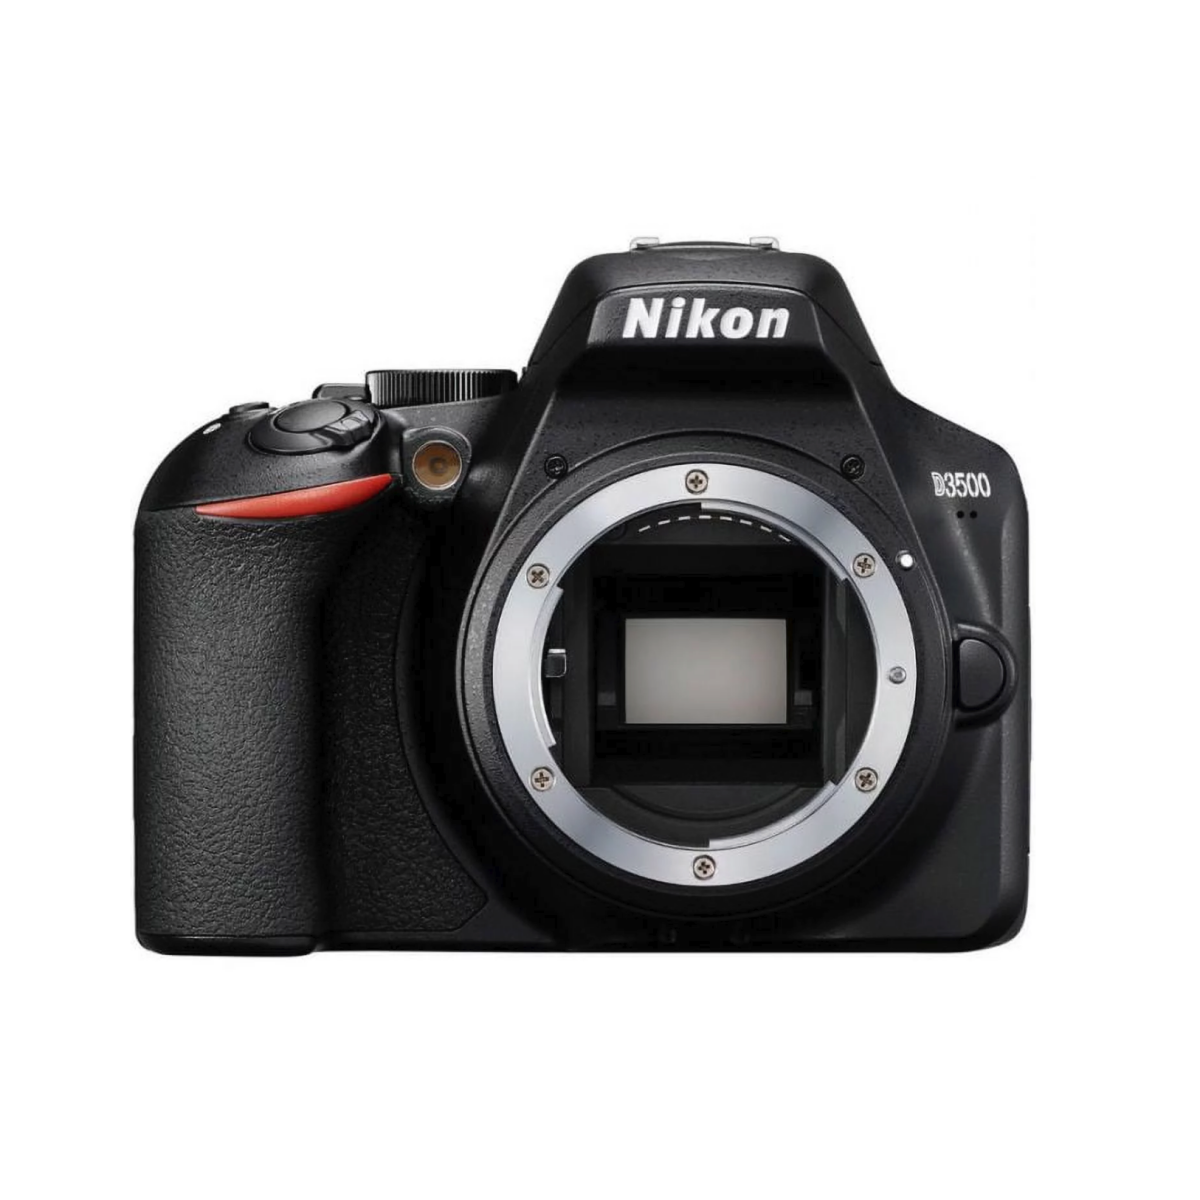 A Nikon D3500 DSLR camera